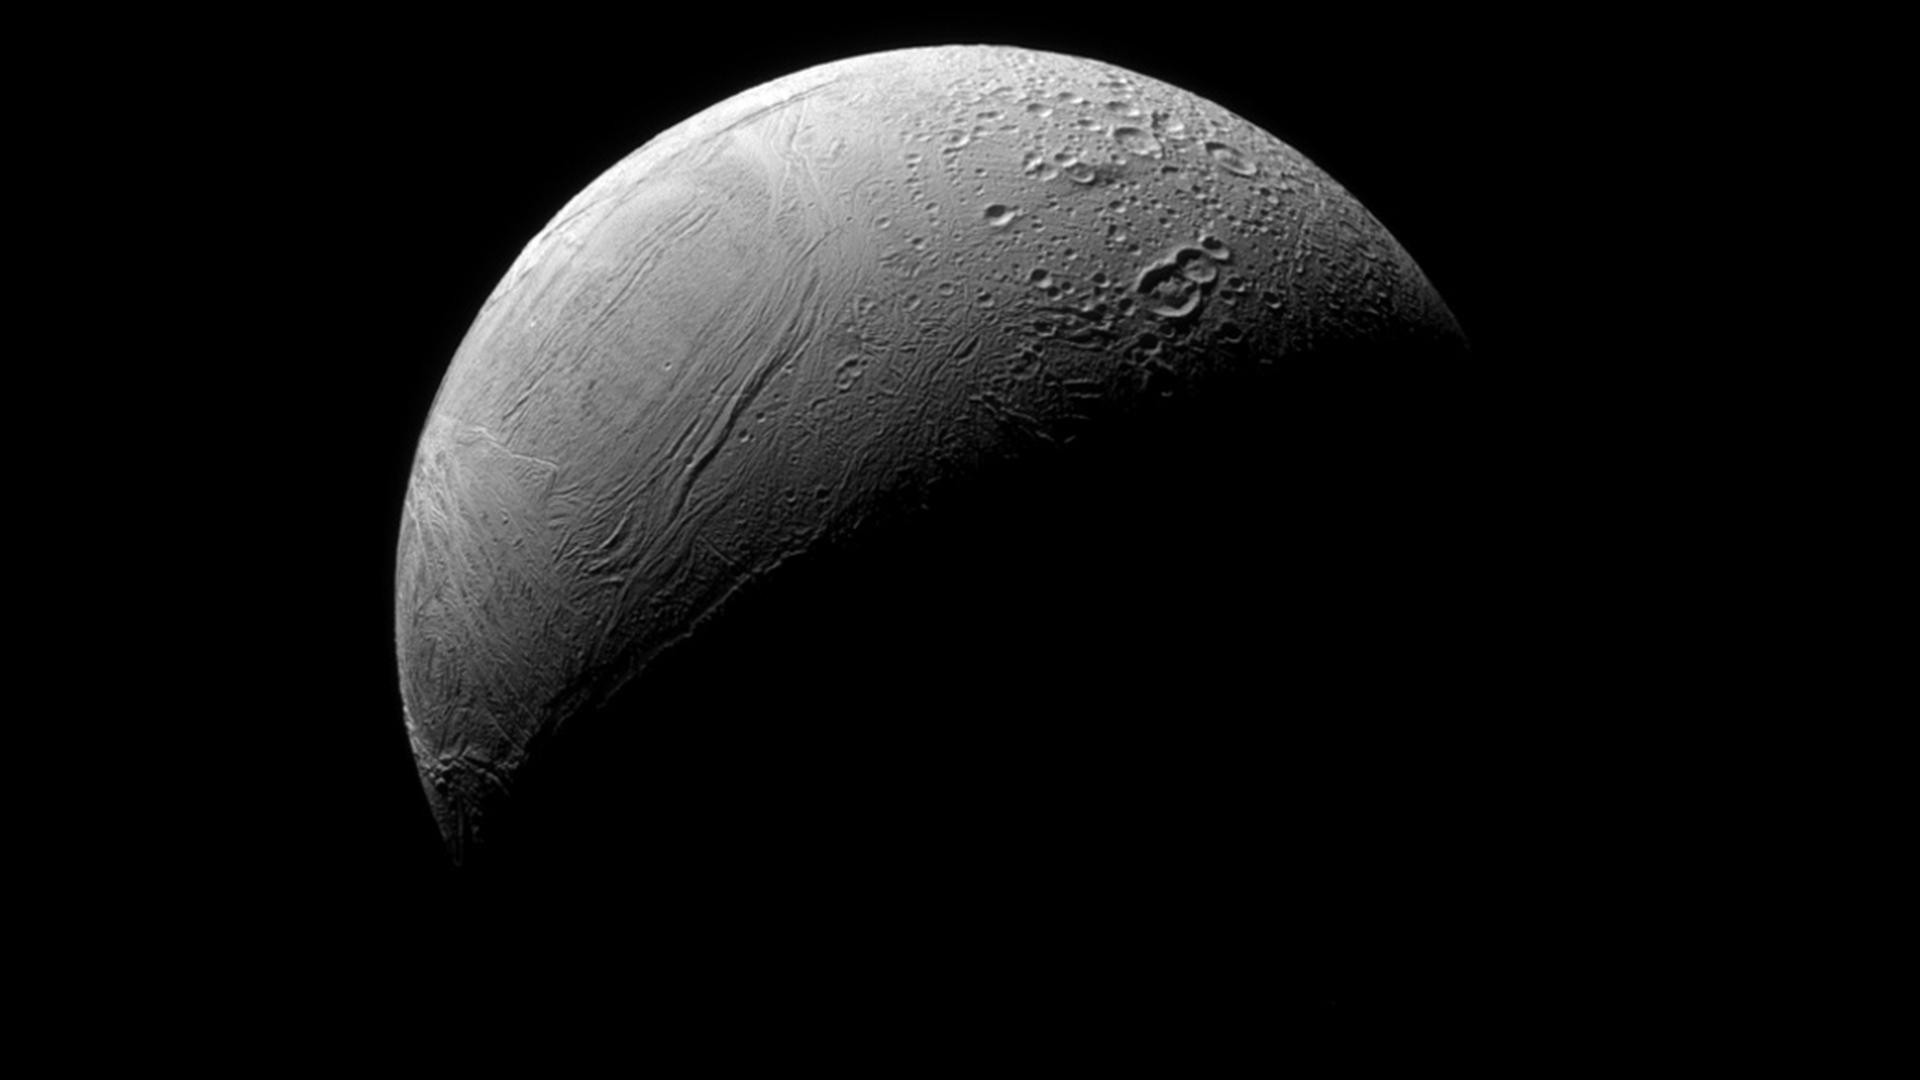  Saturn's moon Enceladus